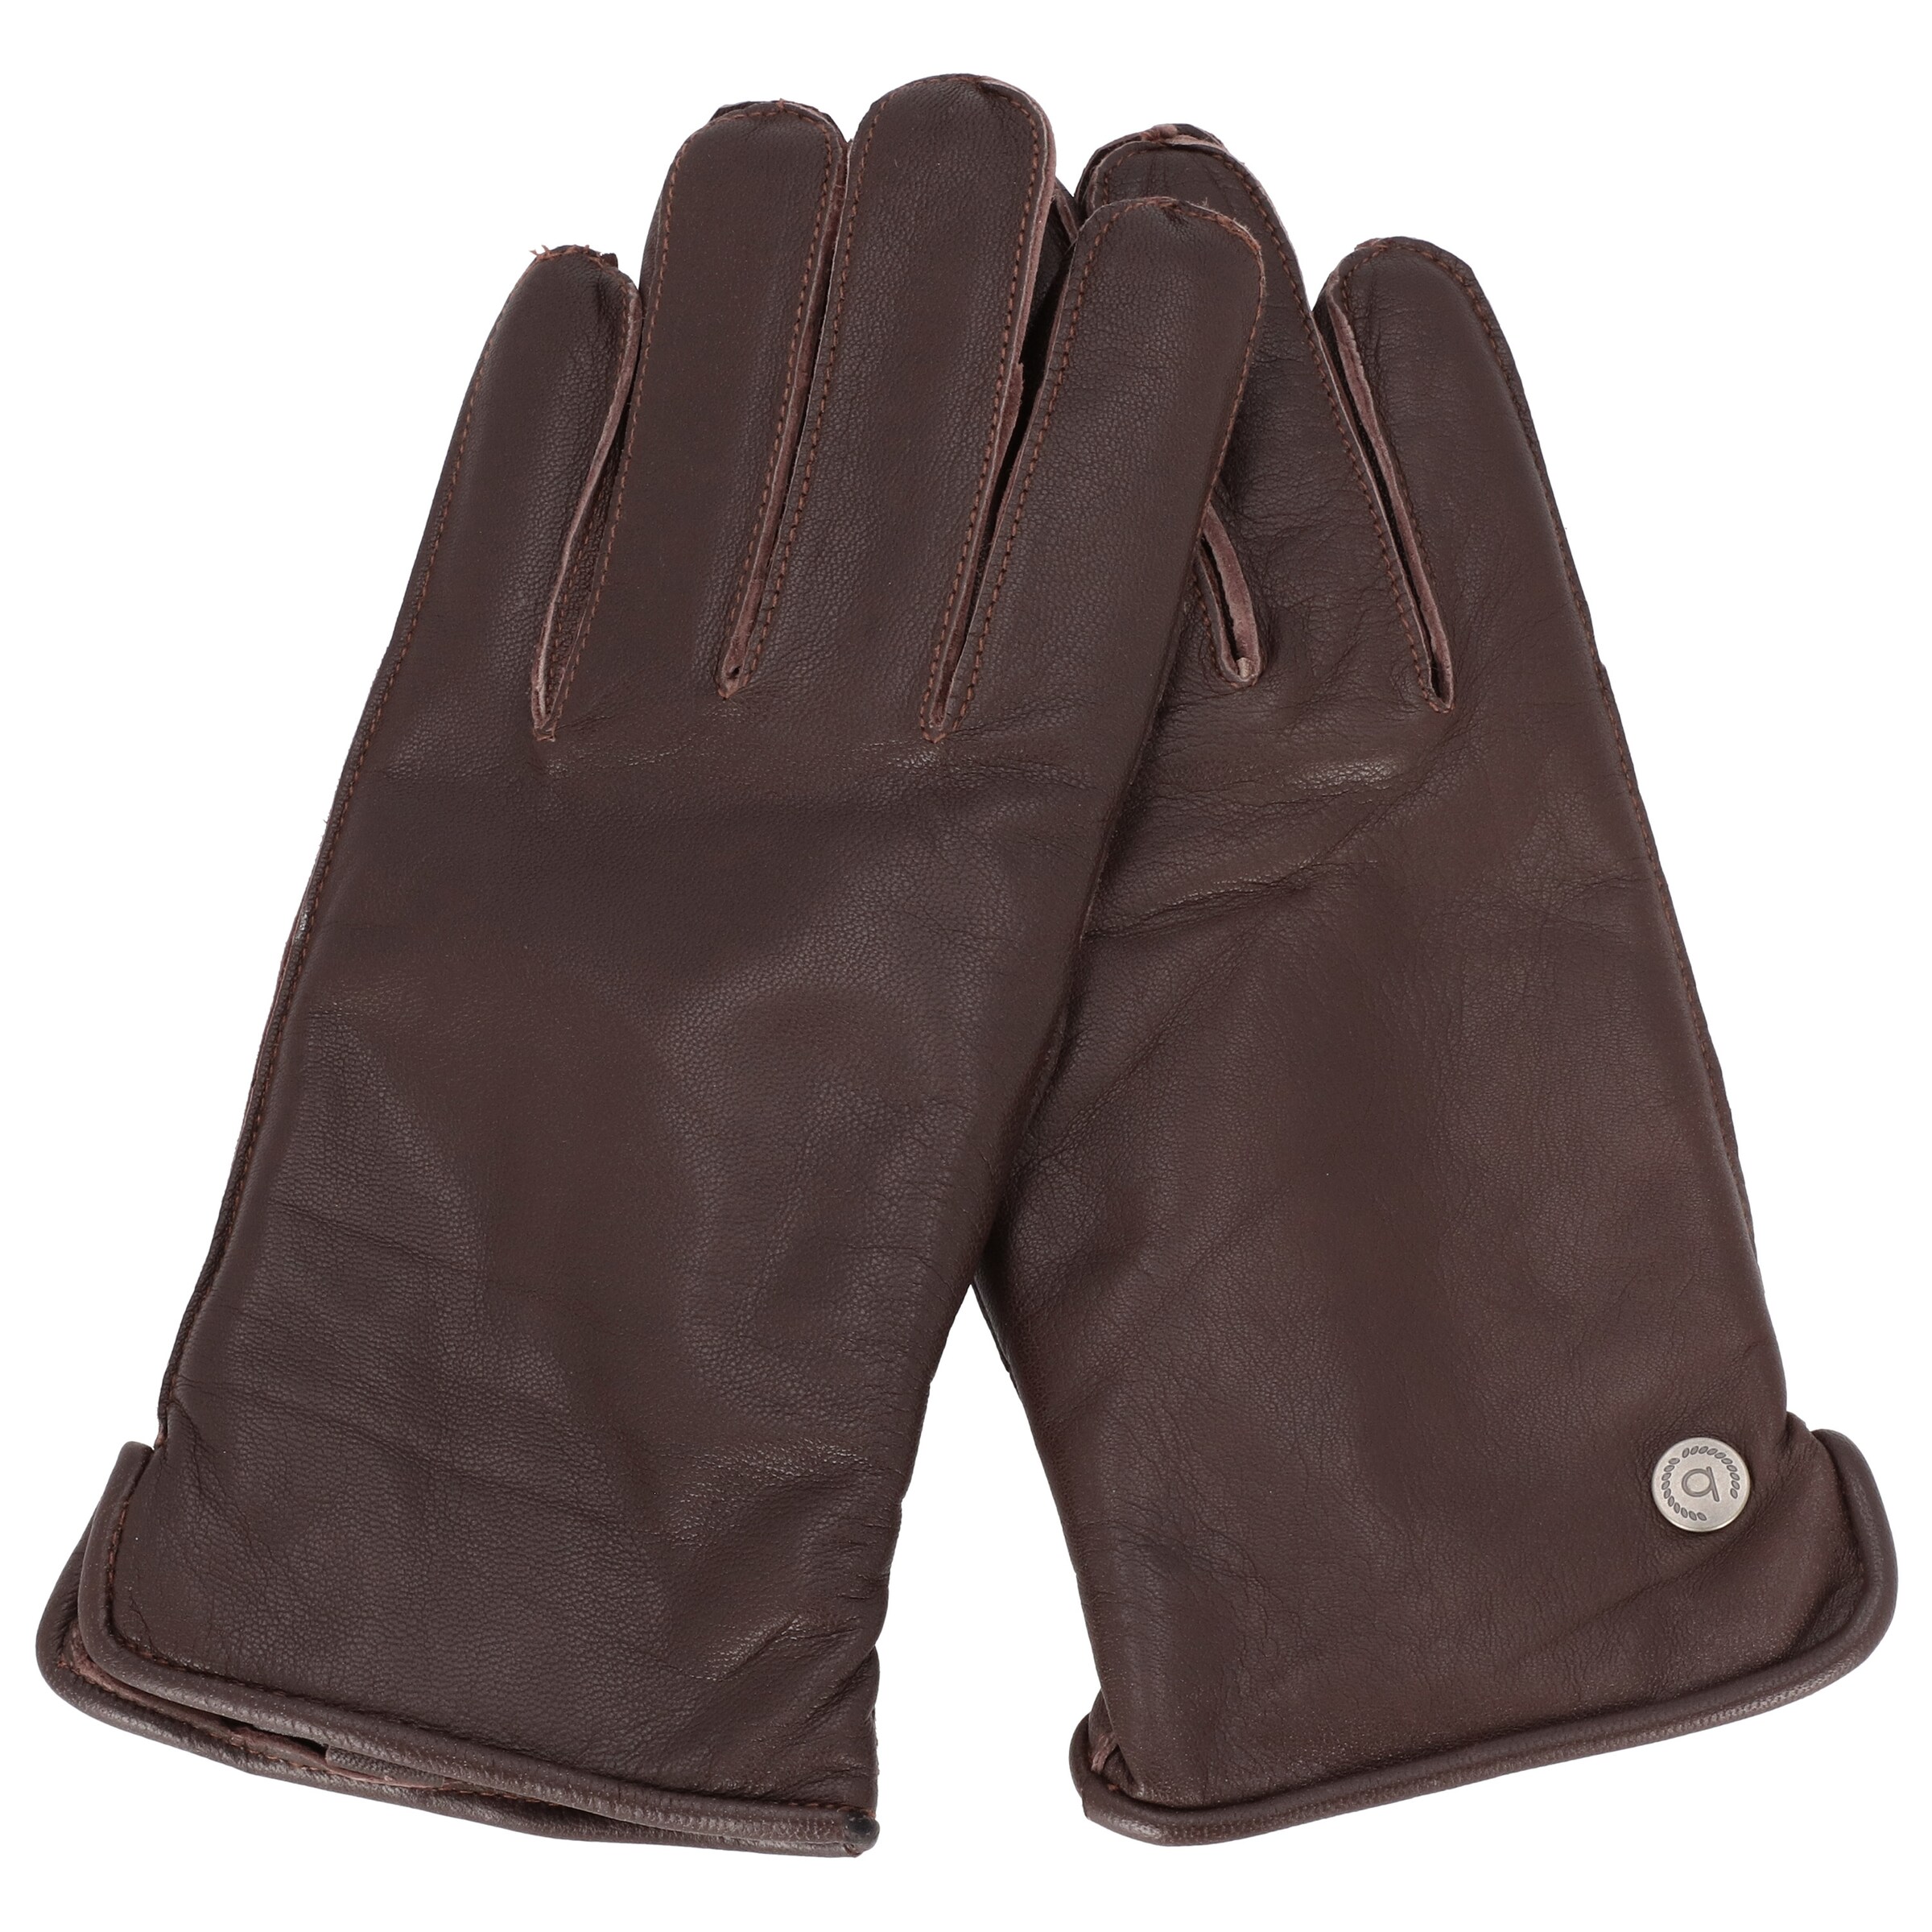 Männer Handschuhe bugatti Fingerhandschuhe in Dunkelbraun - DN01908